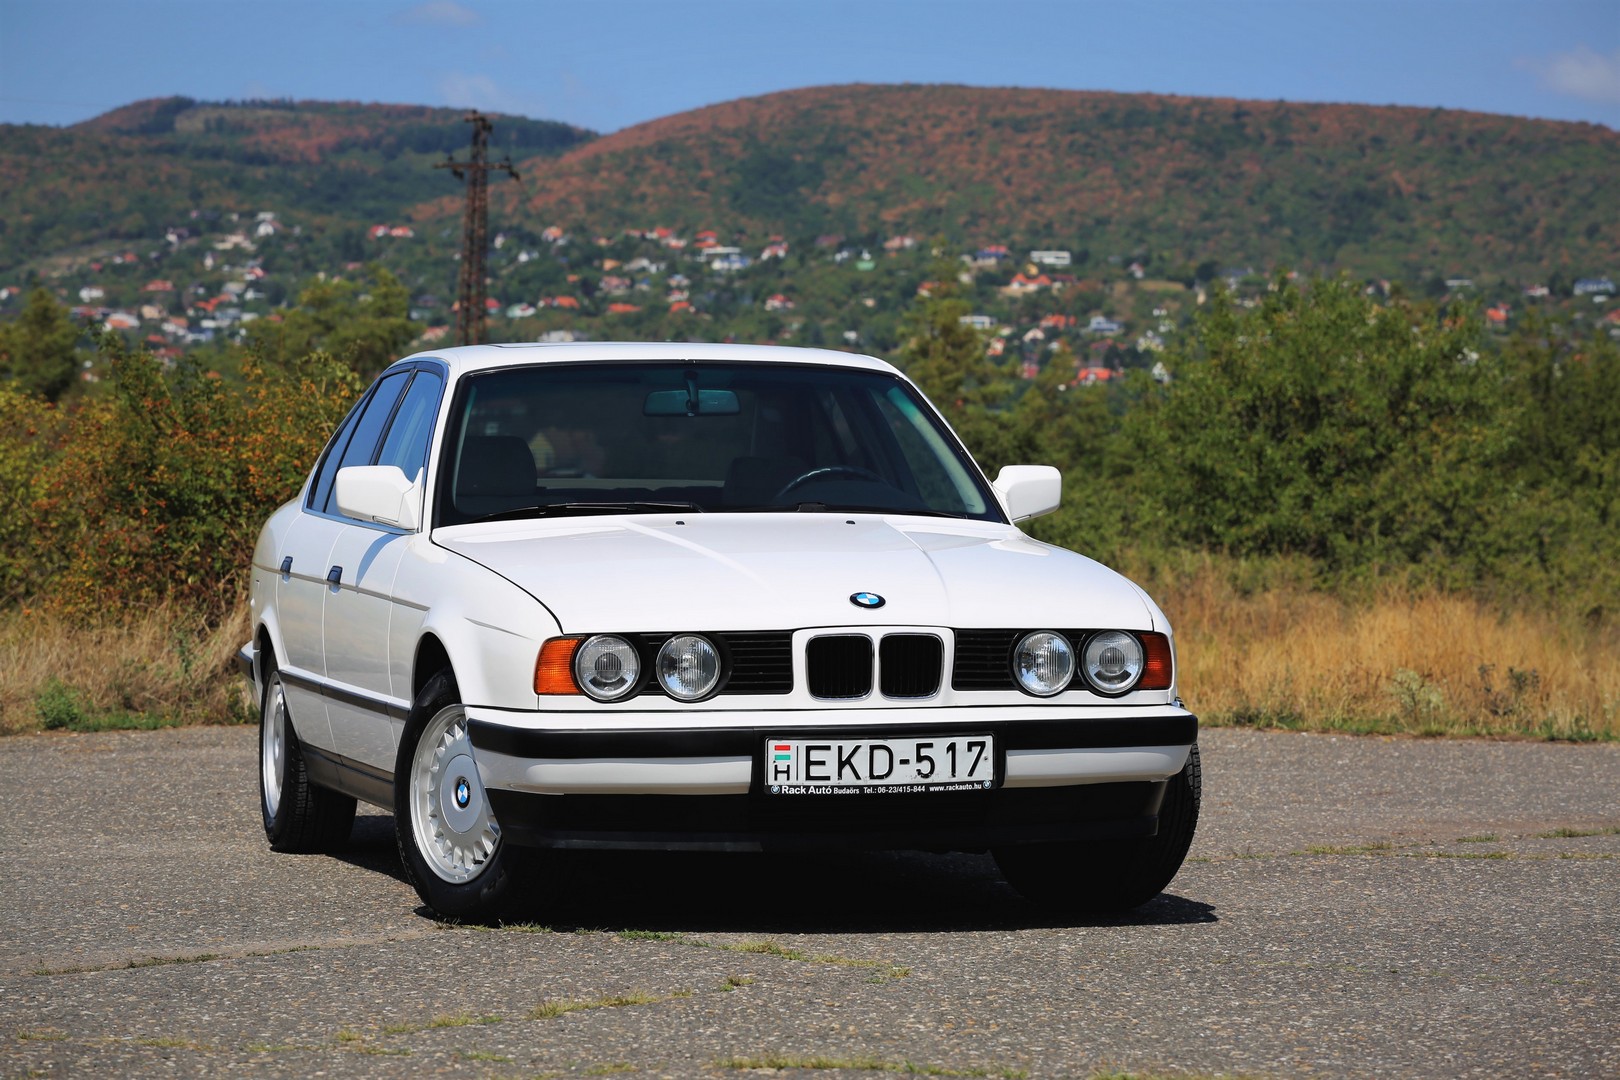 Ennyire tökéletes BMW-t találni lehetetlen! – BMW 520i E34, 1989 13